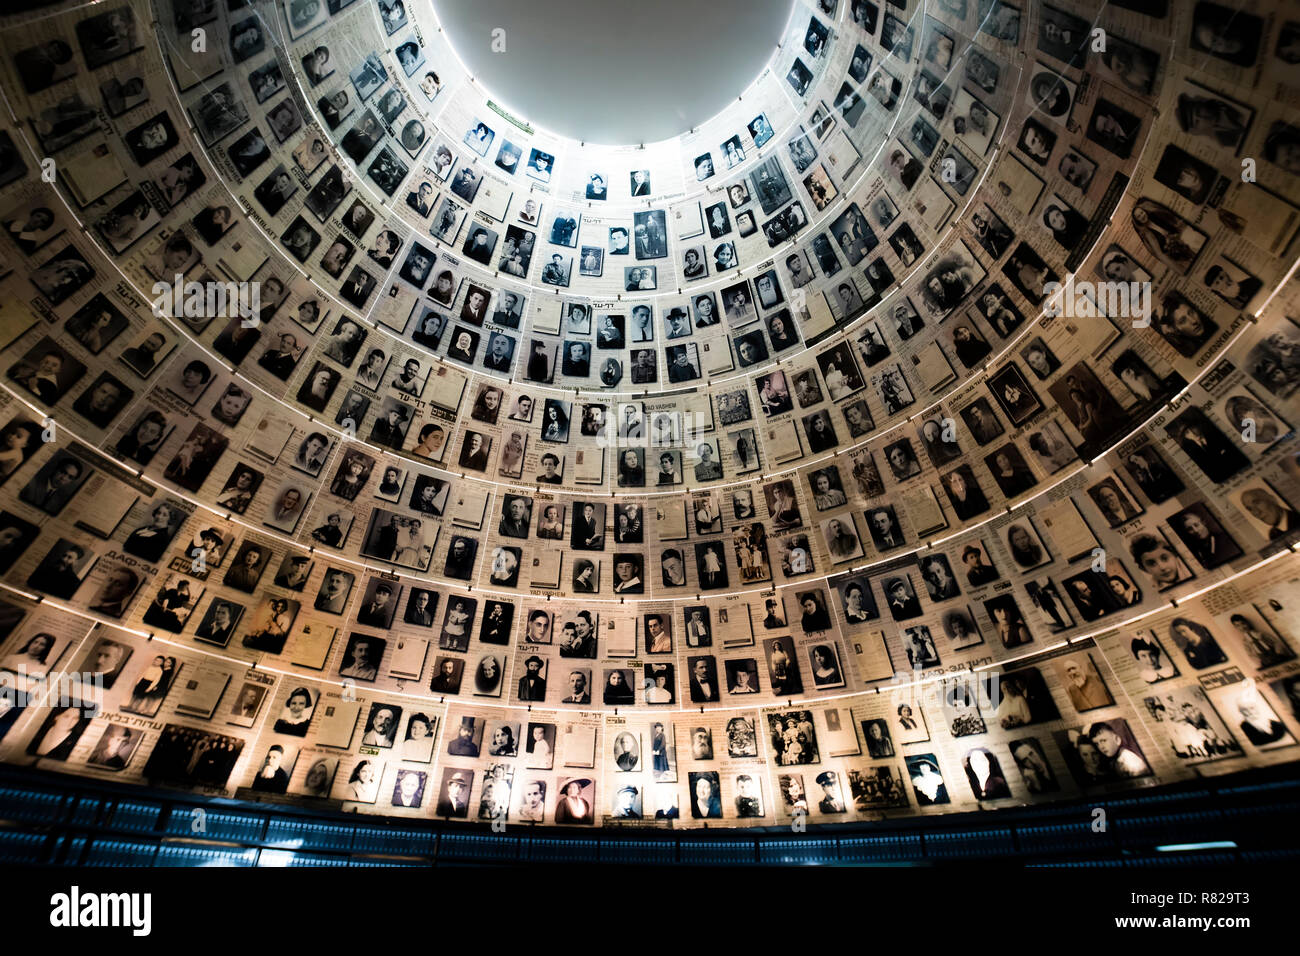 Gerusalemme, Israele - Febbraio 27th, 2017: la Sala dei nomi nel Mausoleo di Yad Vashem - il memoriale dell'Olocausto Sito in Gerusalemme, Israele, ricordando alcuni dei 6 milioni di ebrei uccisi durante la Seconda Guerra Mondiale Foto Stock